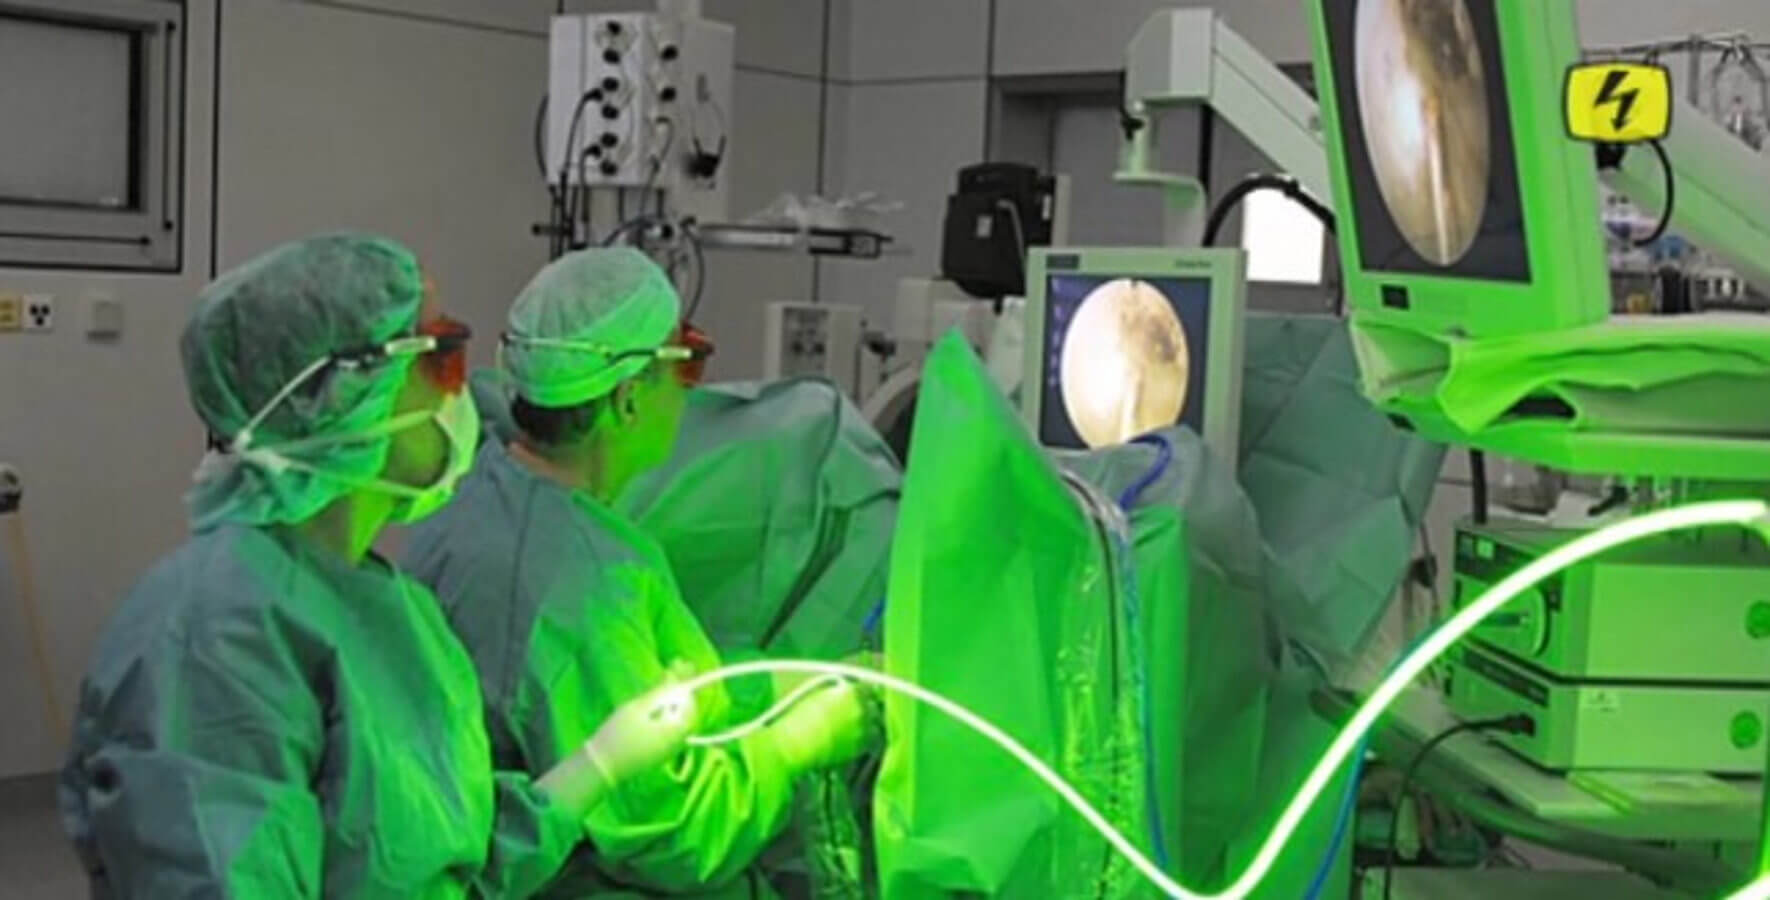 greenlight laser prostata kassenleistung